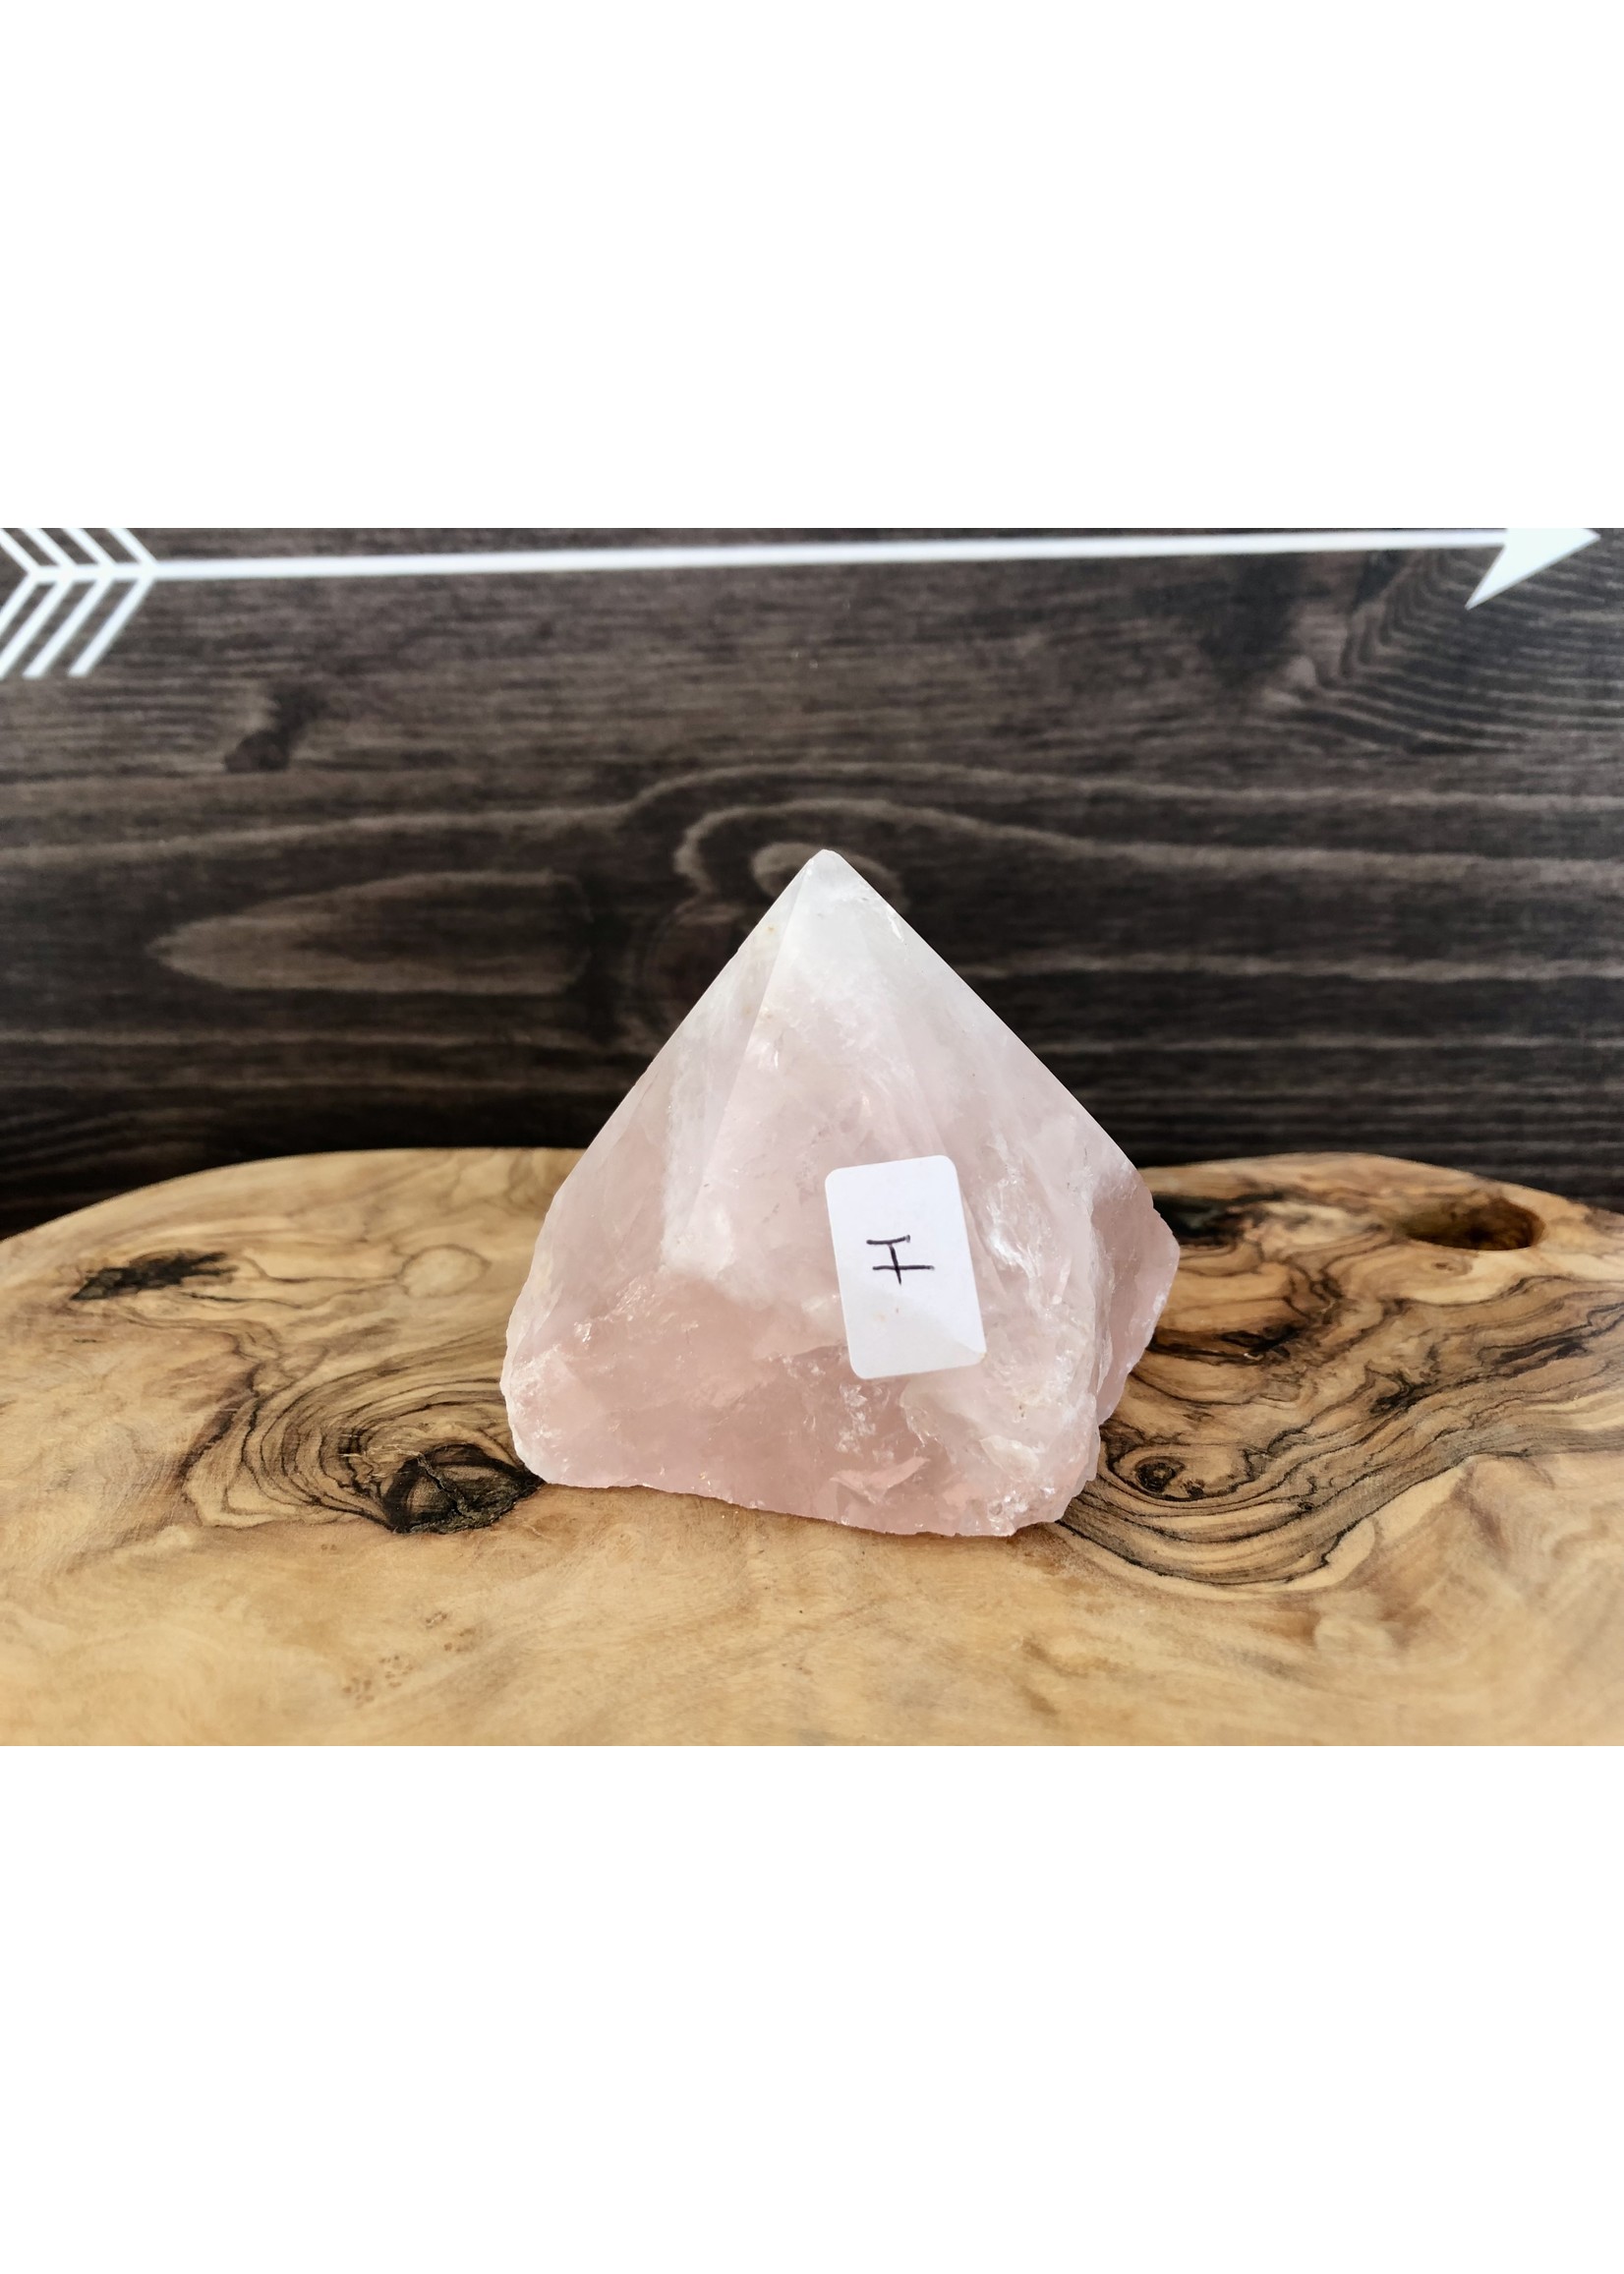 Tour de cristal de quartz rose, pointe de quartz rose, pointe de cristal de quartz rose, grandes pointes de quartz rose